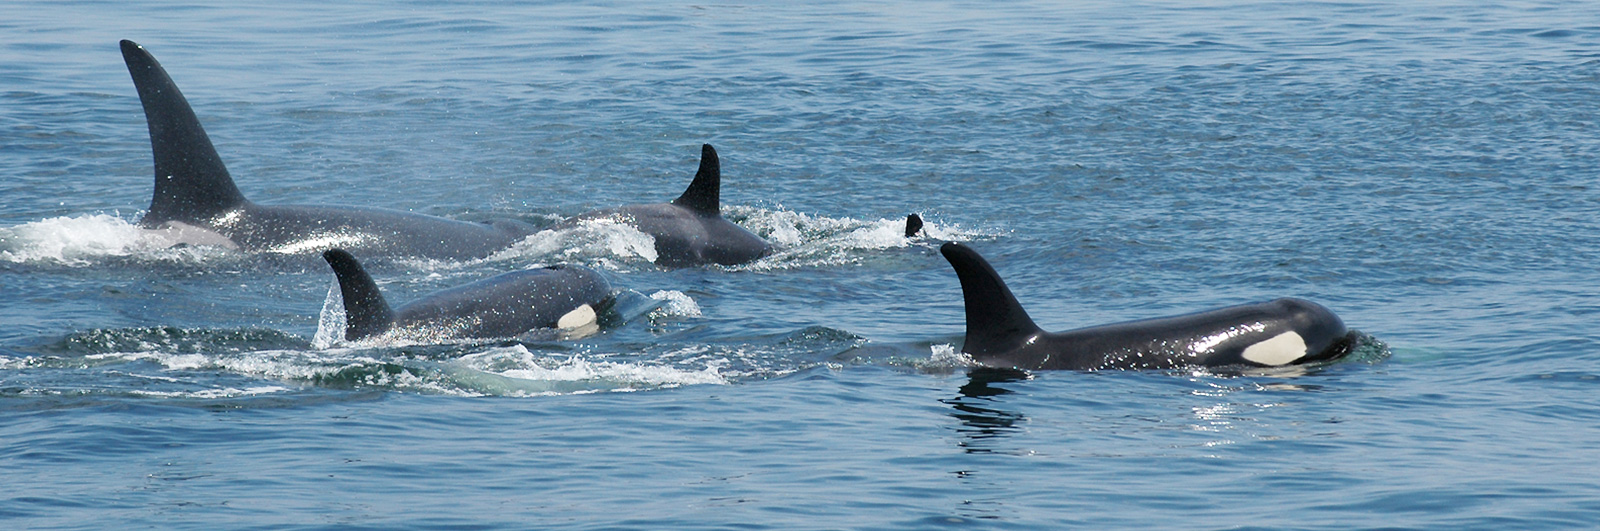 Dauphin bleu et blanc // Striped dolphin - Cétologie - Baleines et dauphins,  le magazine en ligne